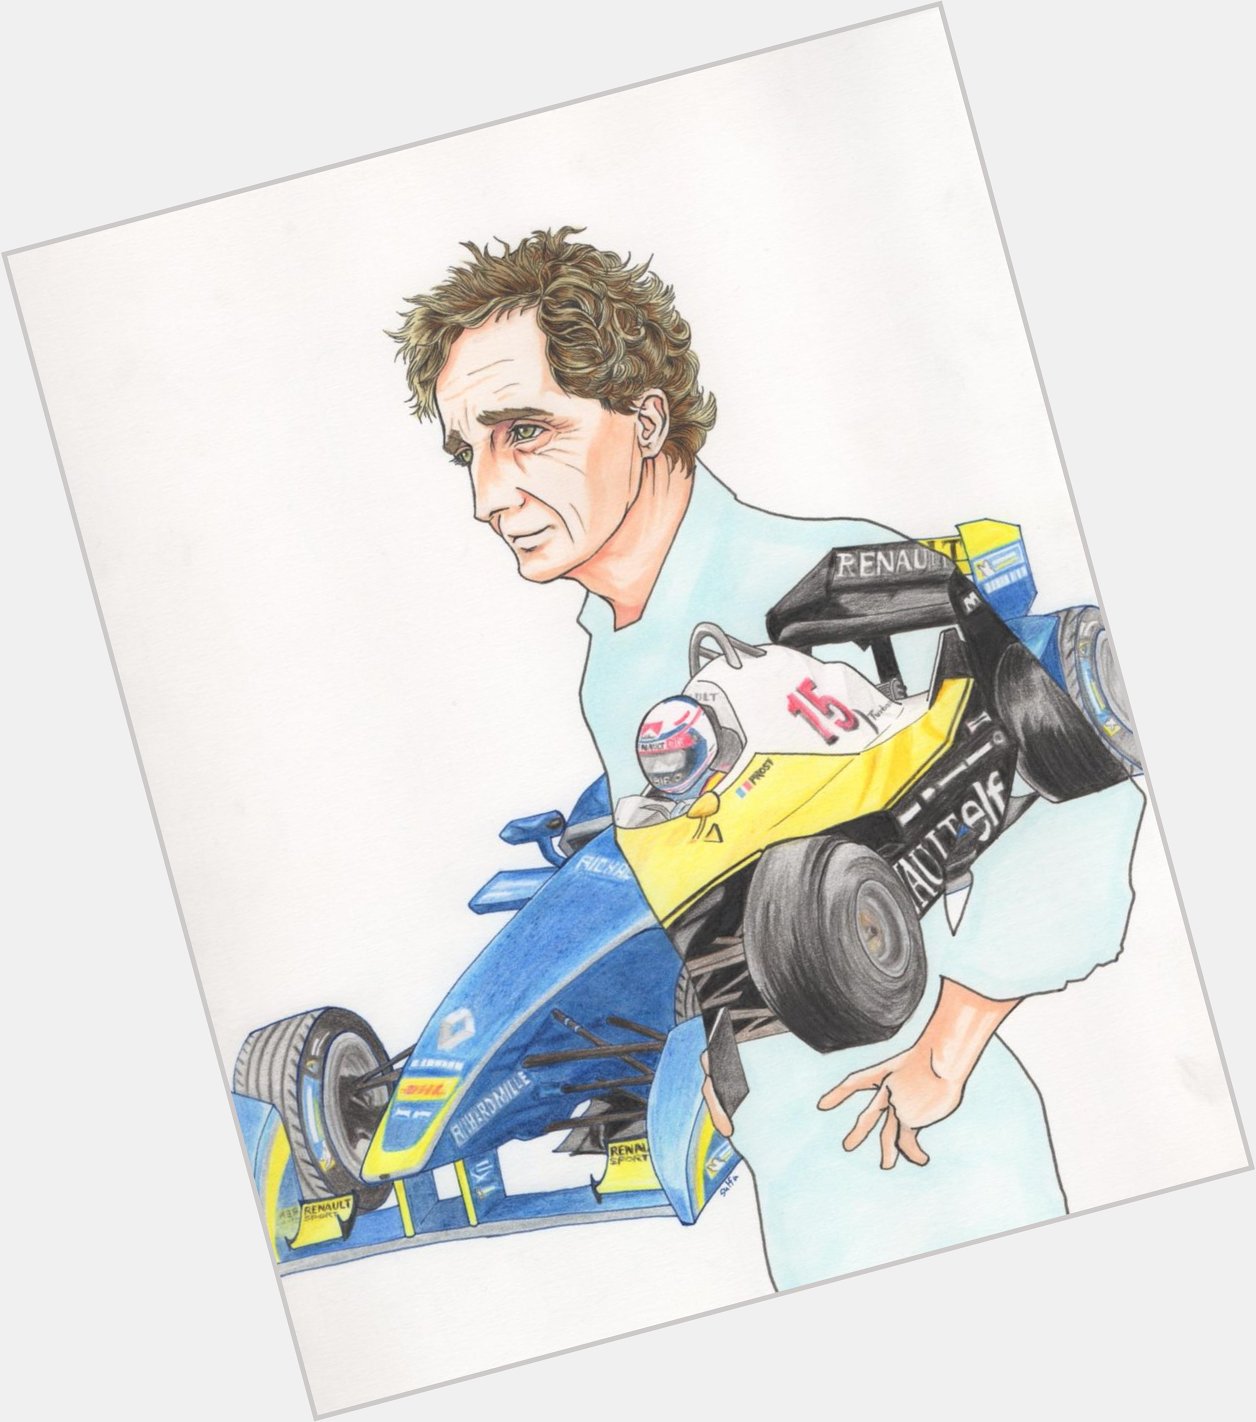 Happy birthday Alain Prost !! 